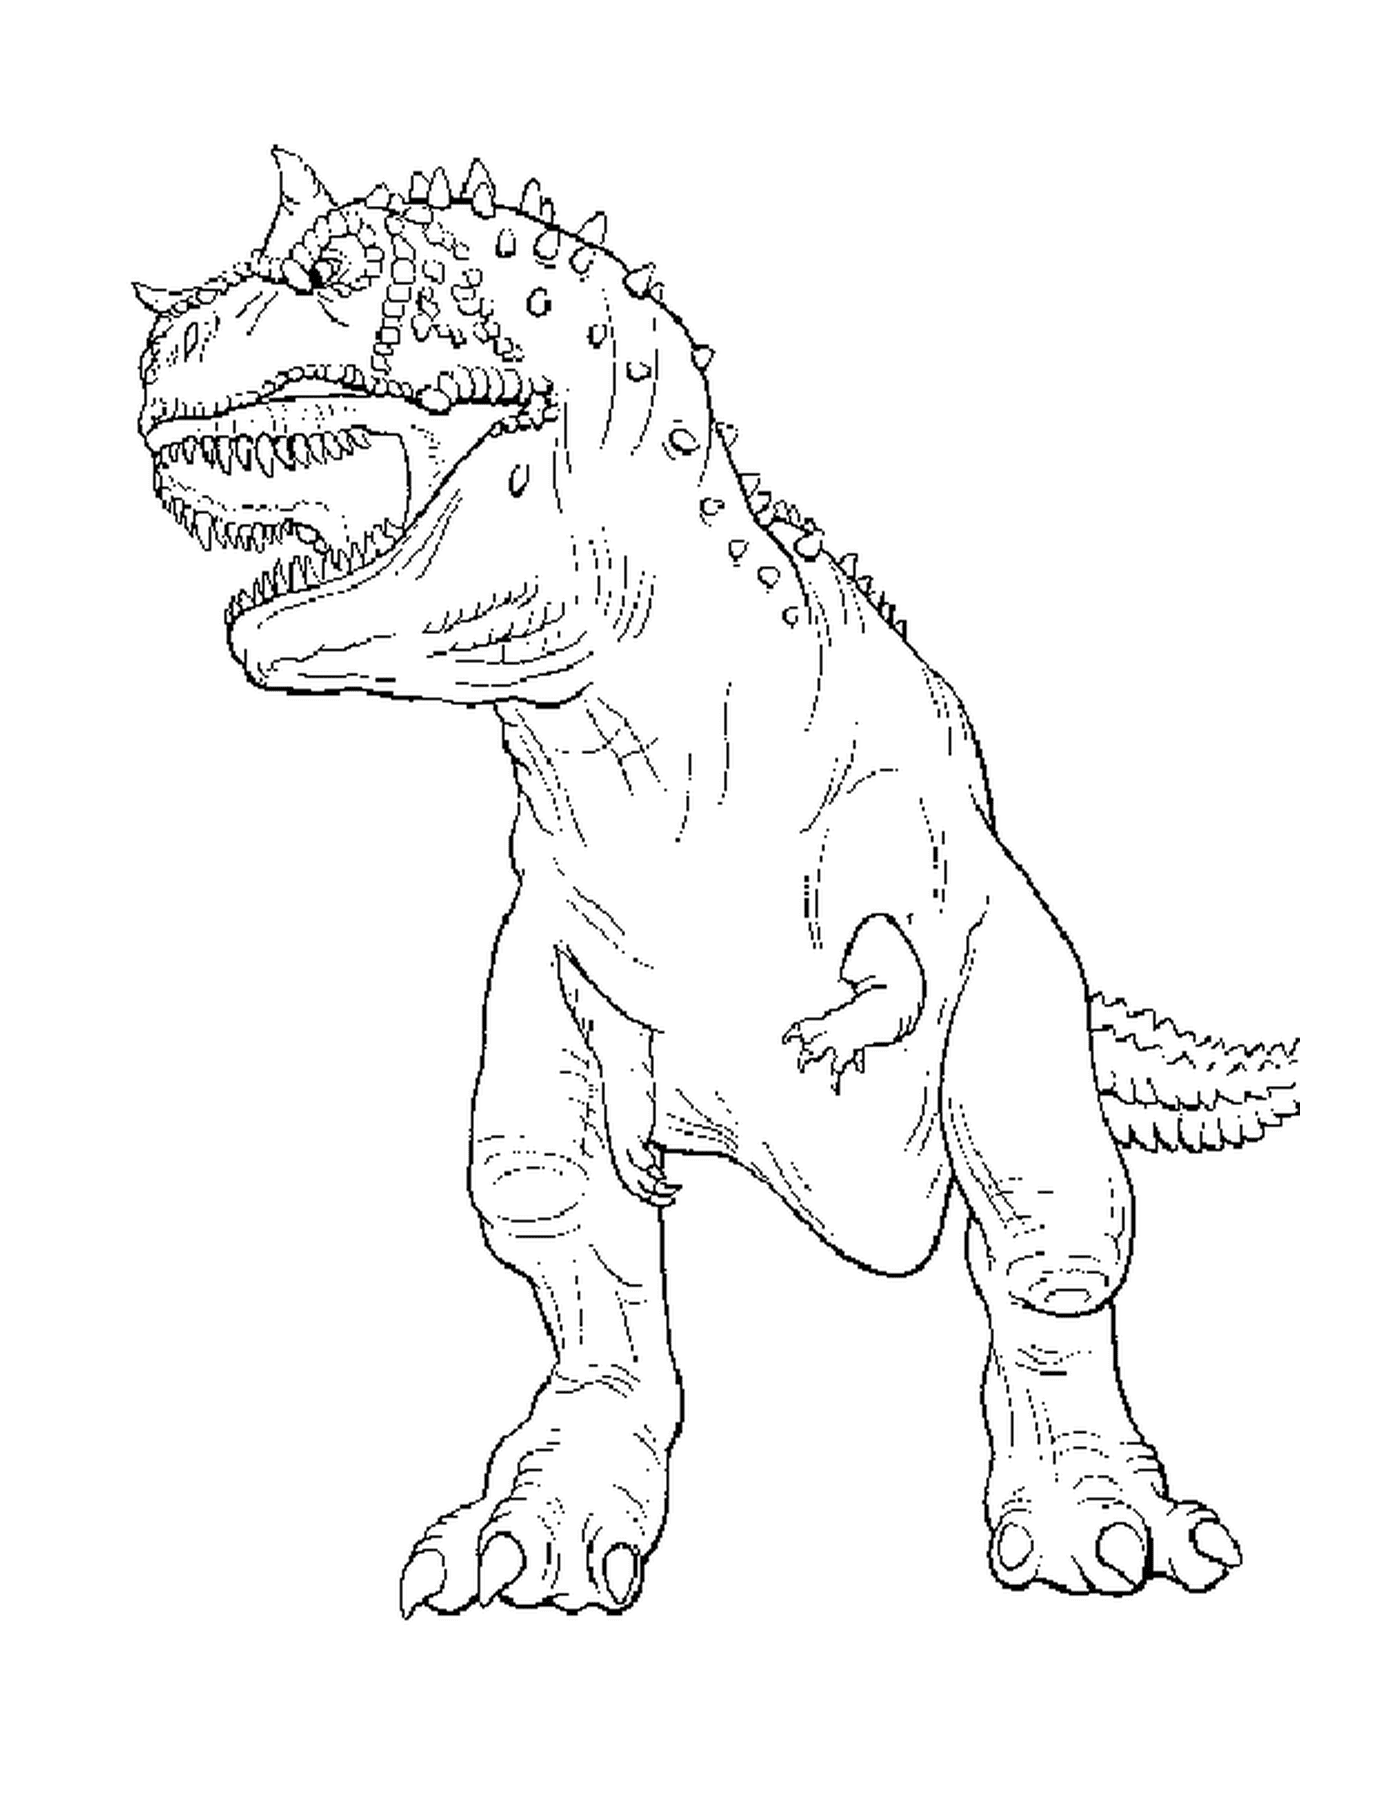   Un tyrannosaure 